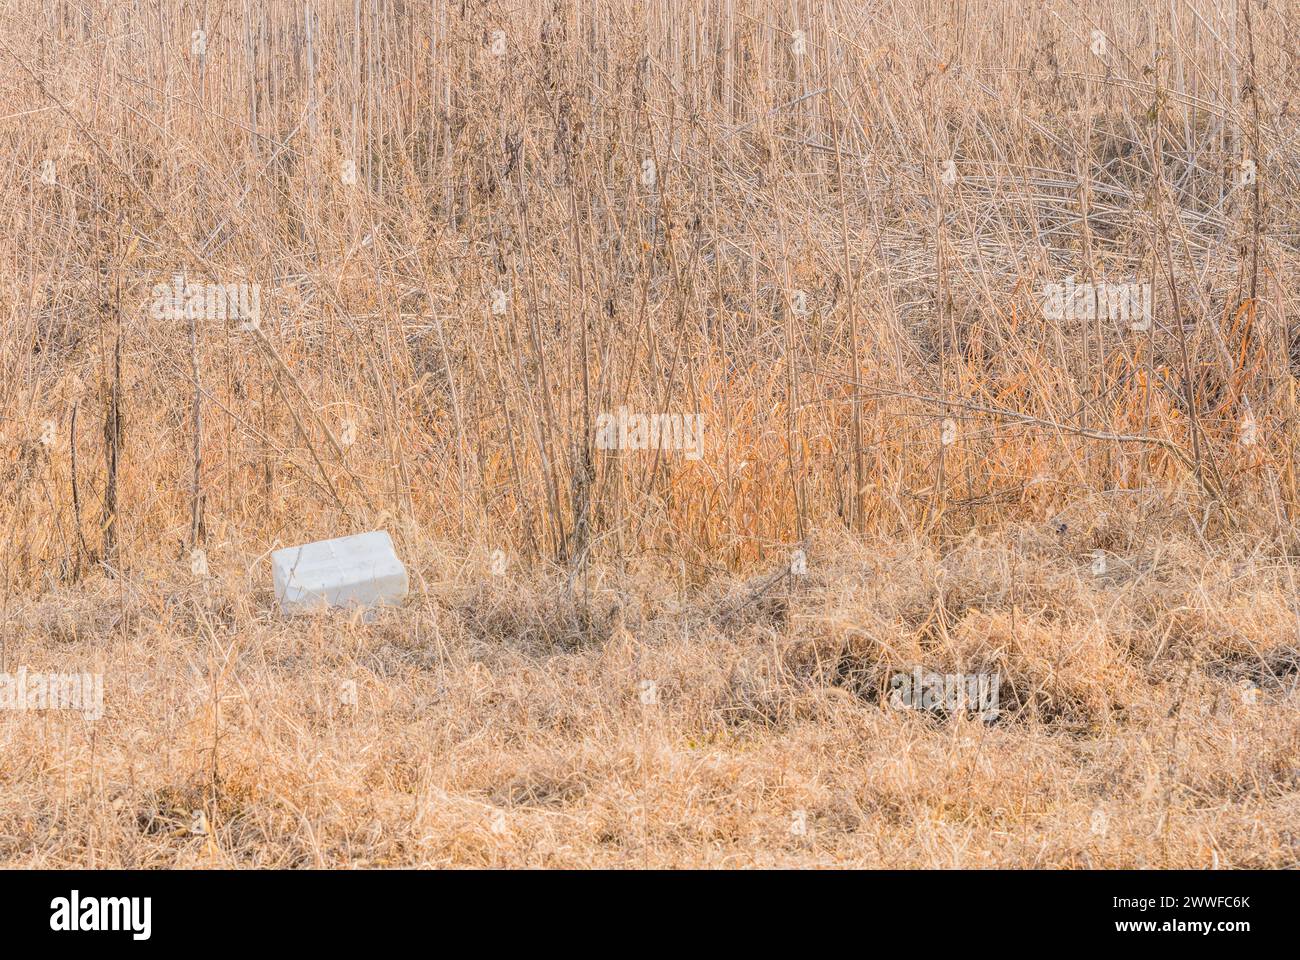 Eine Styroporkontaine, die auf einem Feld mit trockener Vegetation entsorgt wird, veranschaulicht ein Verschmutzungsproblem in Südkorea Stockfoto